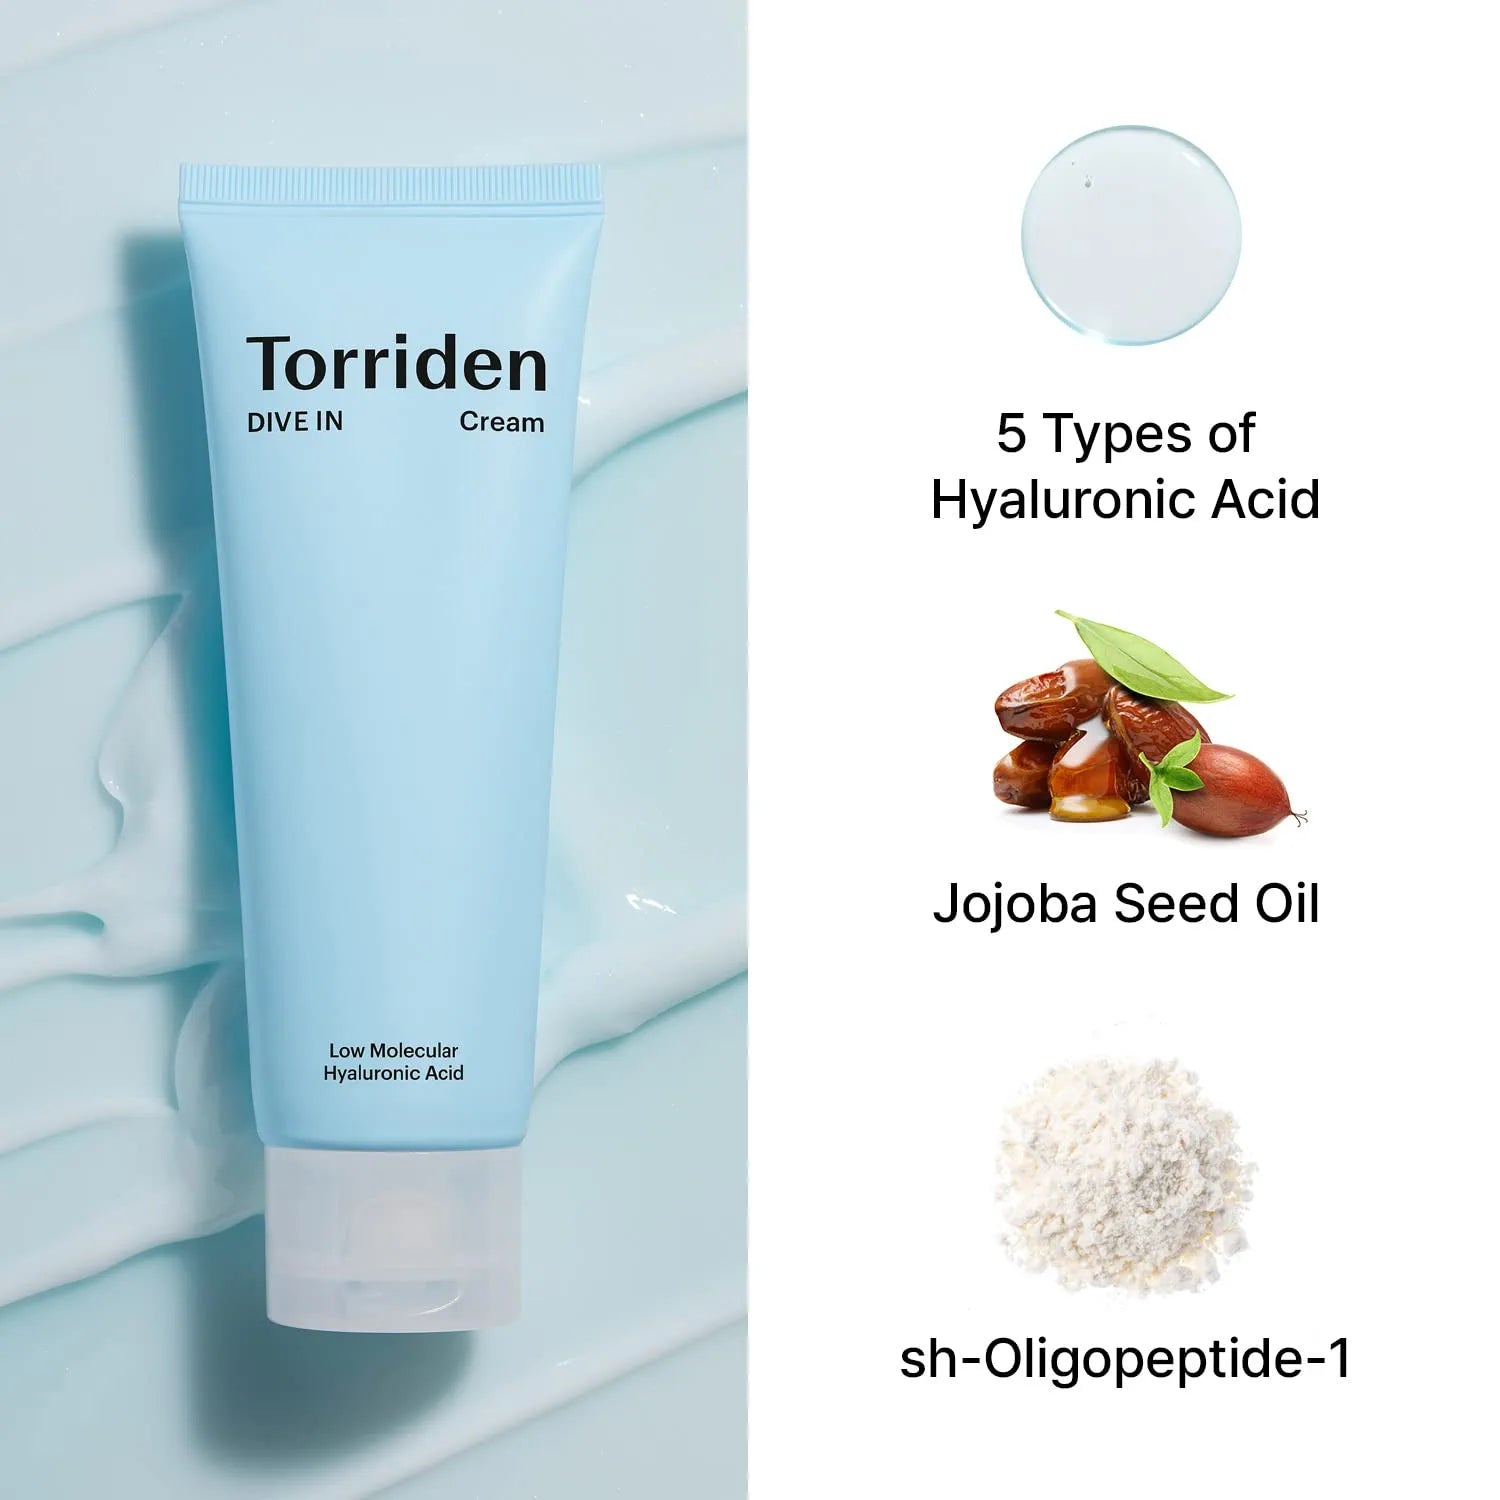 Torriden_DIVE IN Low Molecule Hyaluronic Acid Cream 80ml_1